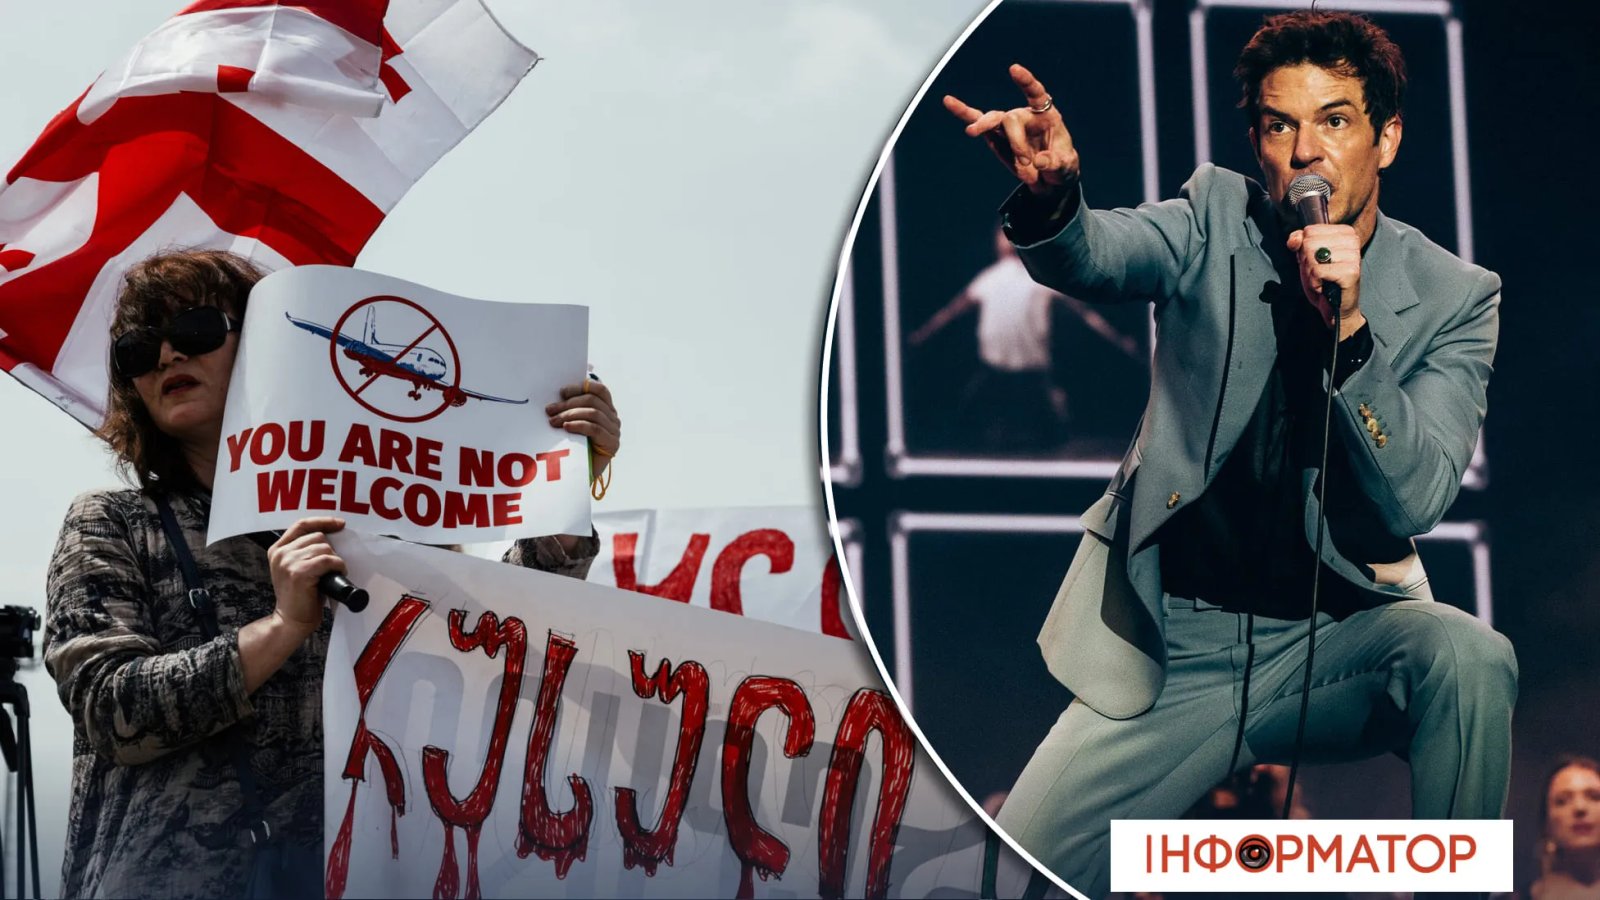 Після скандалу з росіянином американський гурт The Killers скасував всі концерти та запис альбому